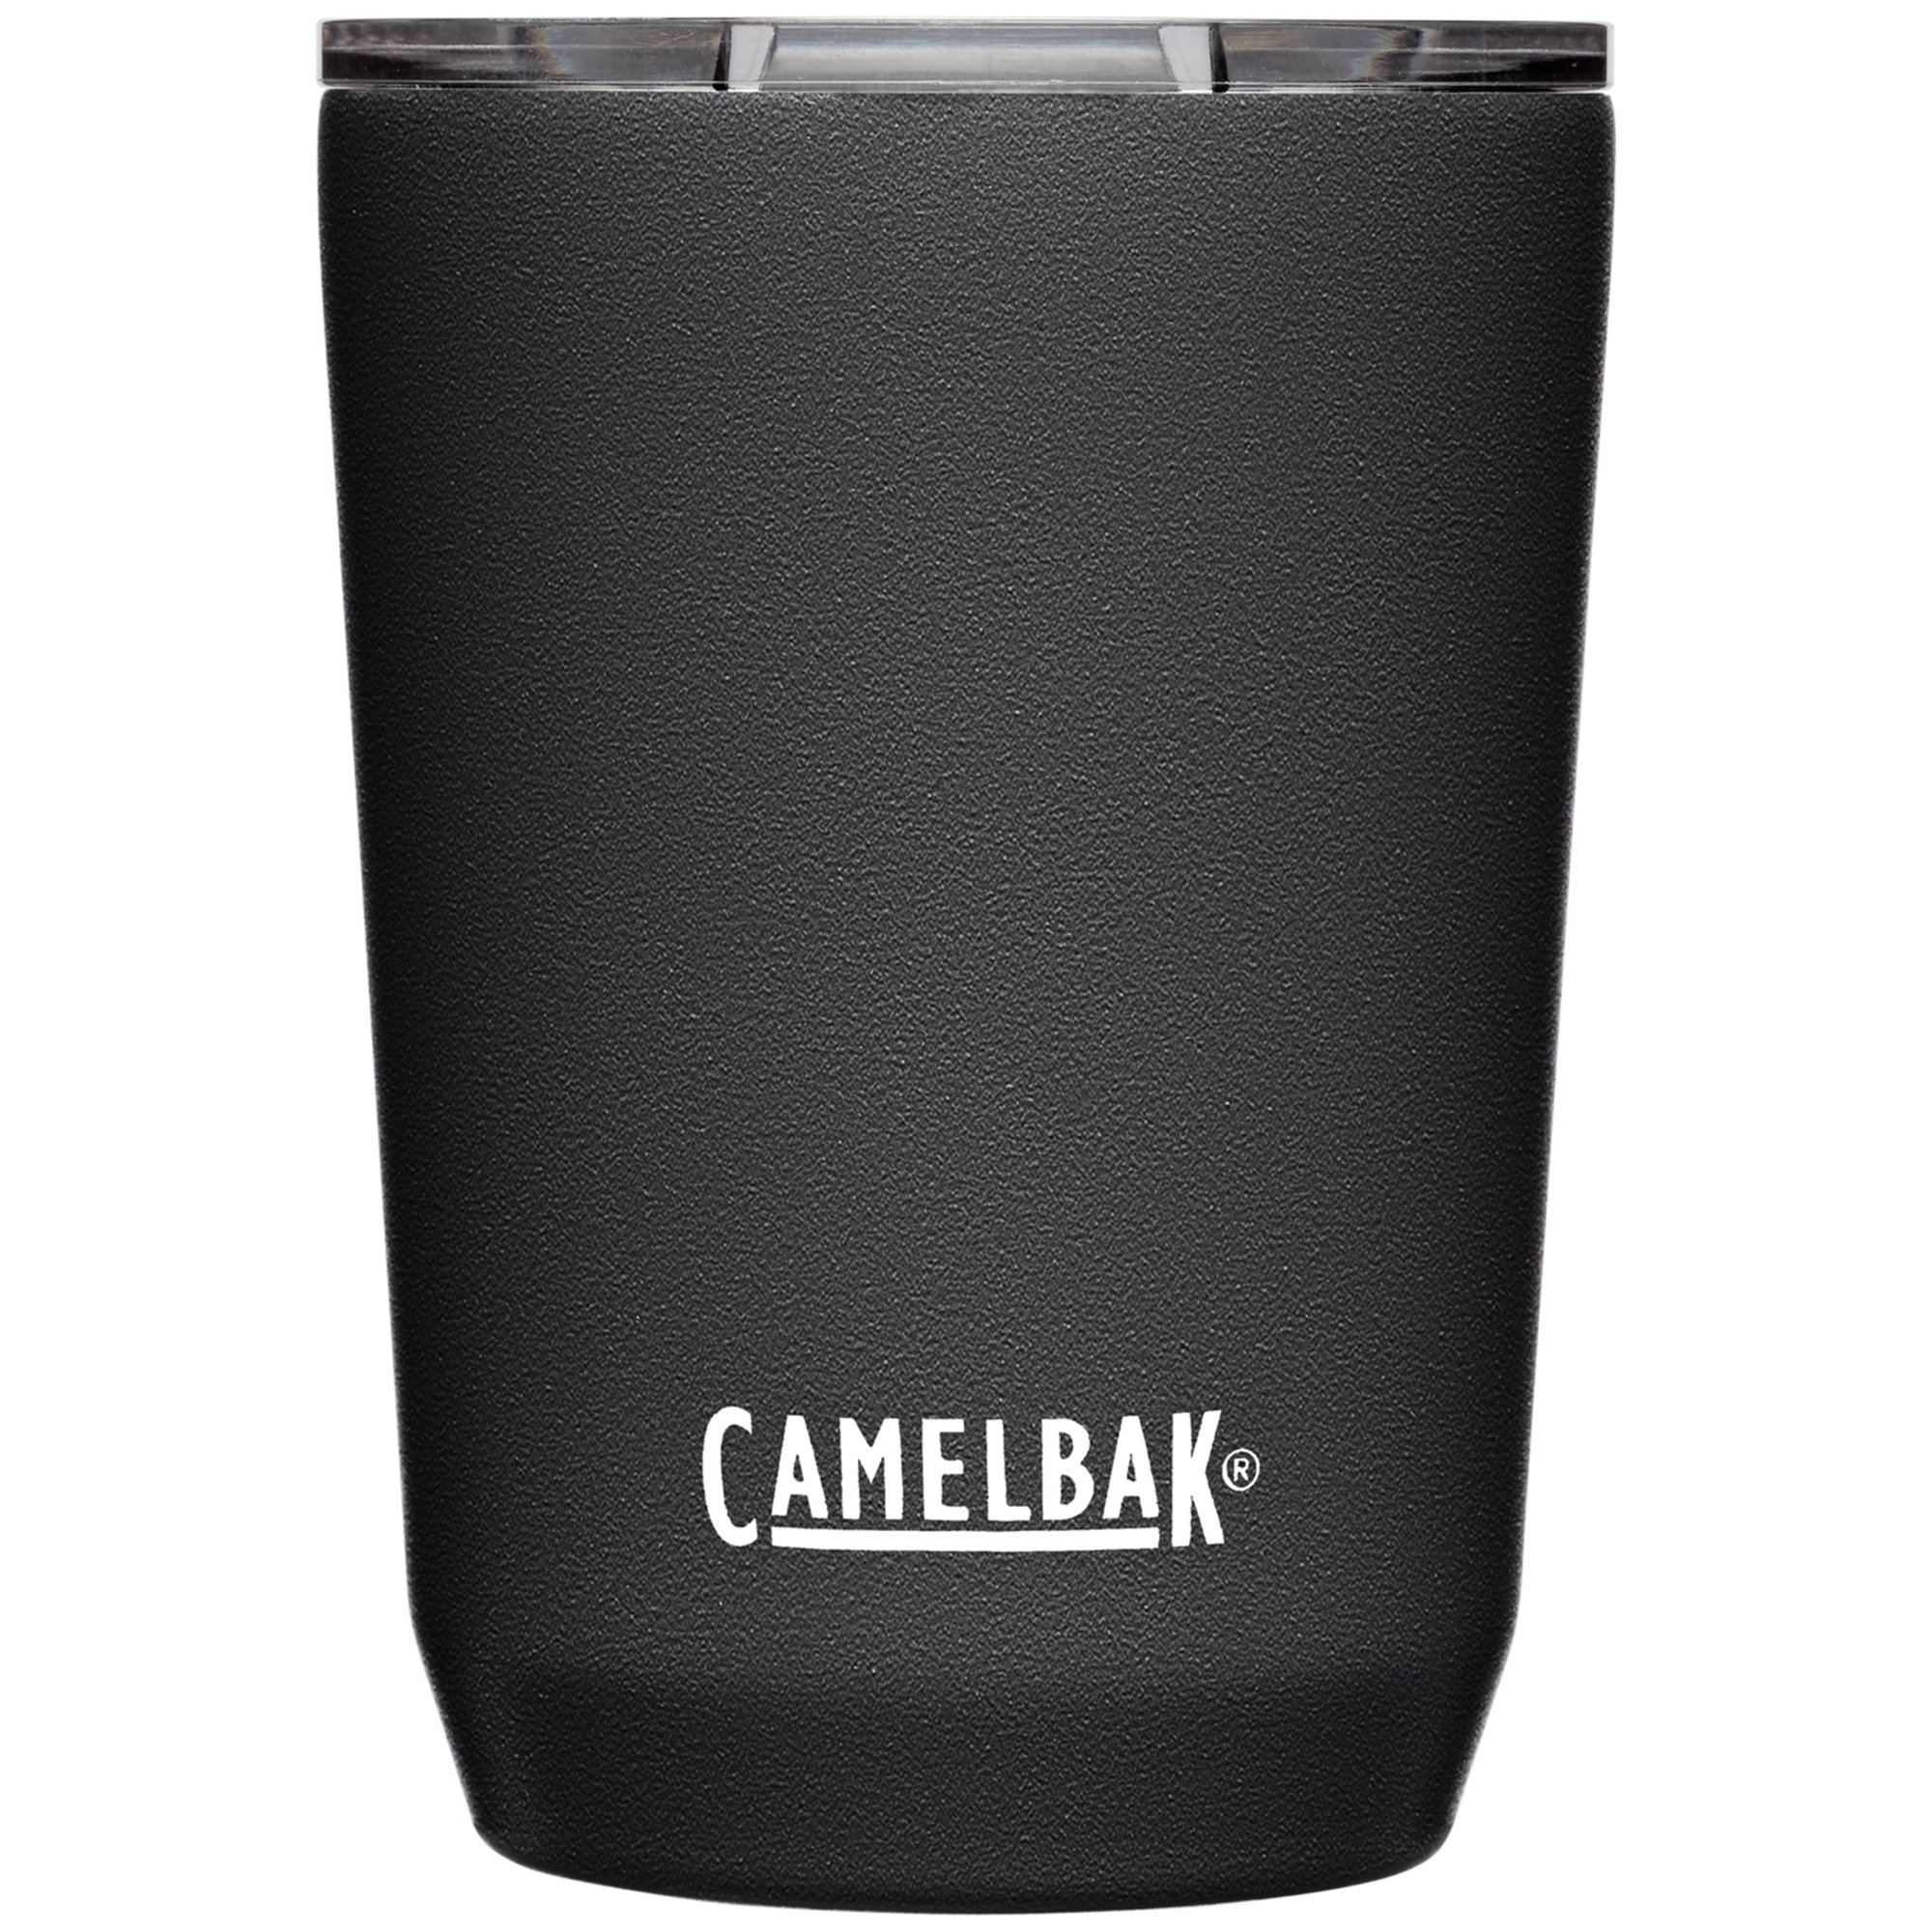 Camelbak Tumbler termokrus 0,35 liter, black